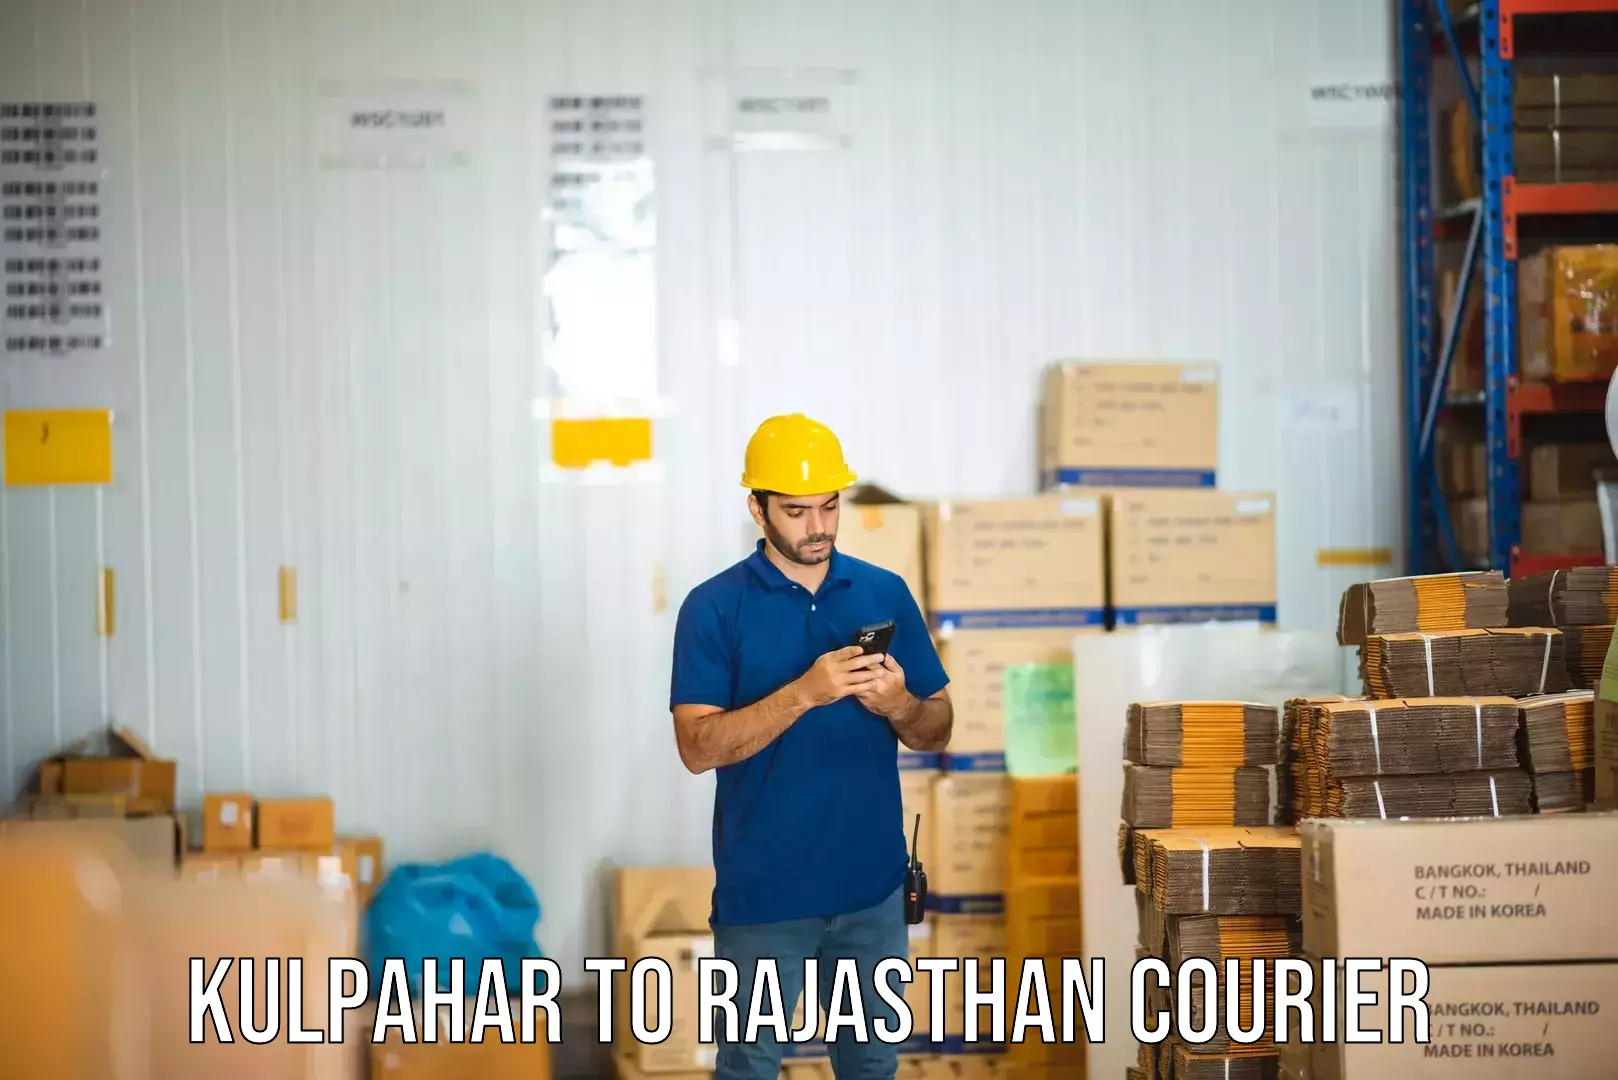 Efficient order fulfillment Kulpahar to Sardarshahr